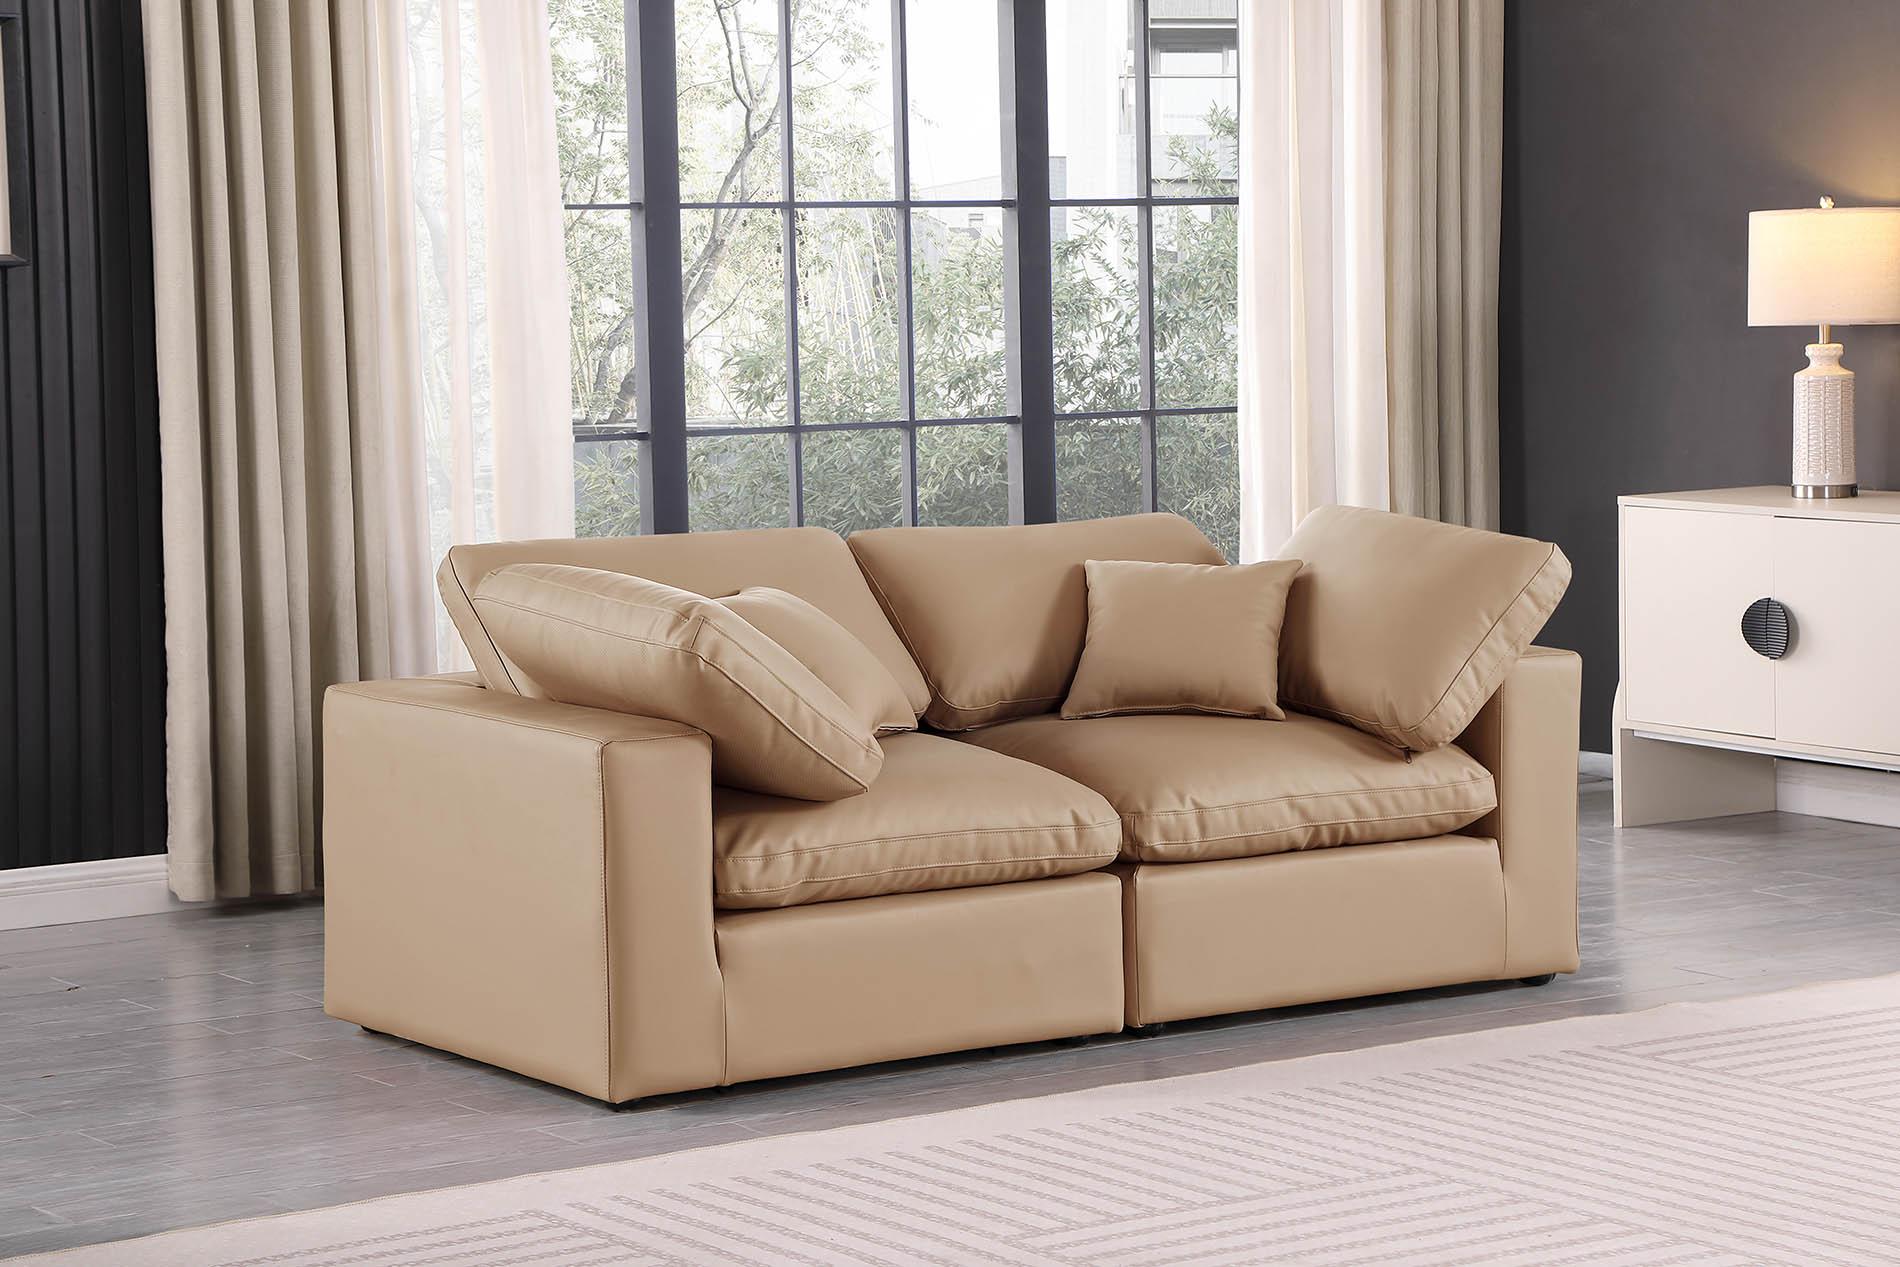 

    
Tan Vegan Leather Modular Sofa COMFY 188Tan-S80 Meridian Contemporary
